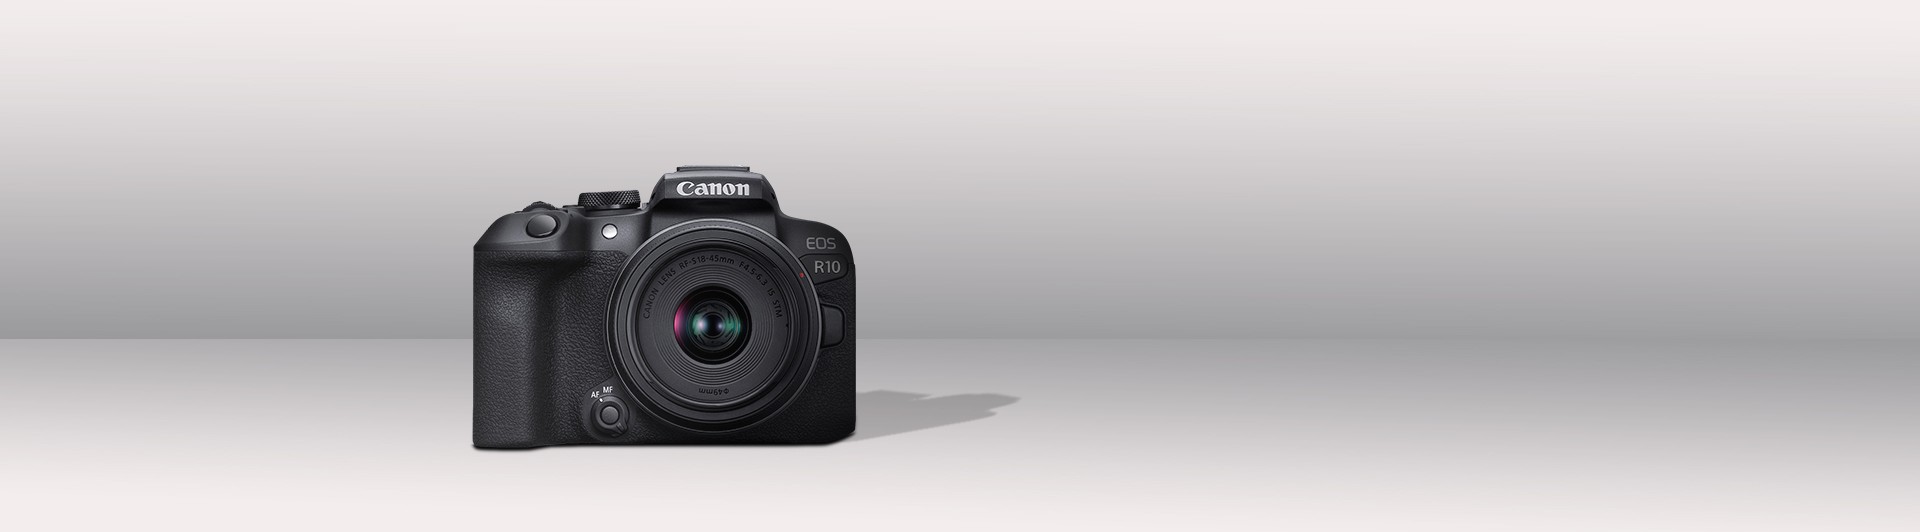 Với thiết kế đẹp mắt, chức năng chụp ảnh liên tục và chụp ảnh phong cảnh, máy ảnh Canon EOS R10 là sự lựa chọn hoàn hảo cho những người yêu thích nhiếp ảnh. Hãy thưởng thức những bức ảnh tuyệt vời với máy ảnh này.